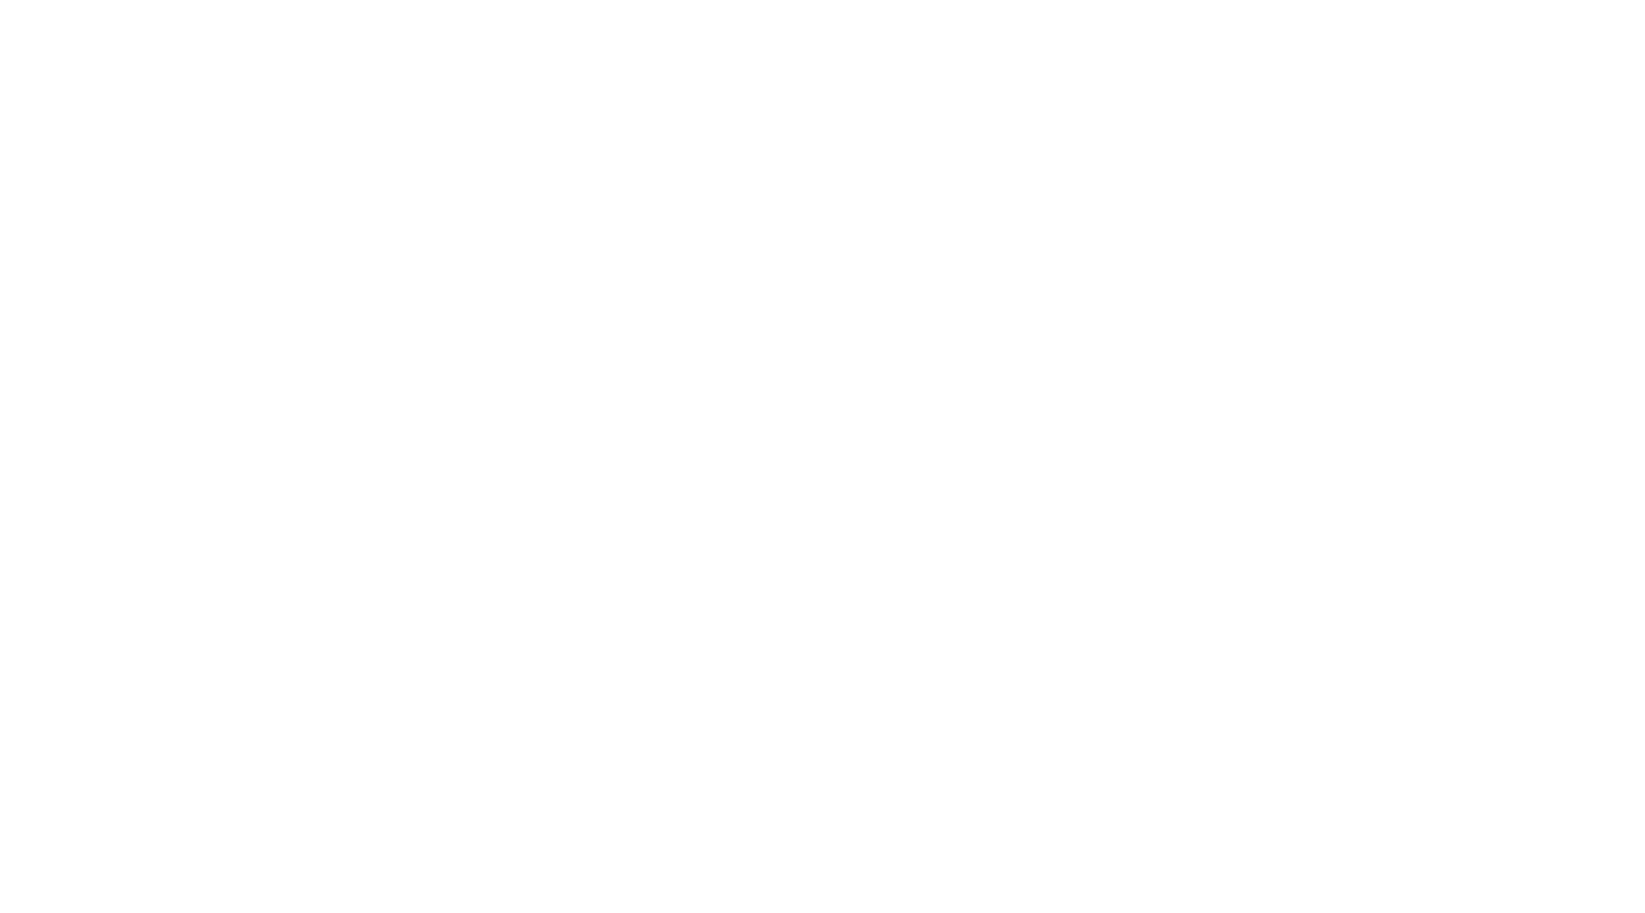 Кейс сервиса BRANDNATION - Дизайн упаковки твердого сыра. Брендинговое агентство BRANDNATION в Москве и Санкт-Петербурге. Услуги: разработка логотипа и фирменного стиля, дизайн упаковки, брендбук, ребрендинг, разработка сайта.